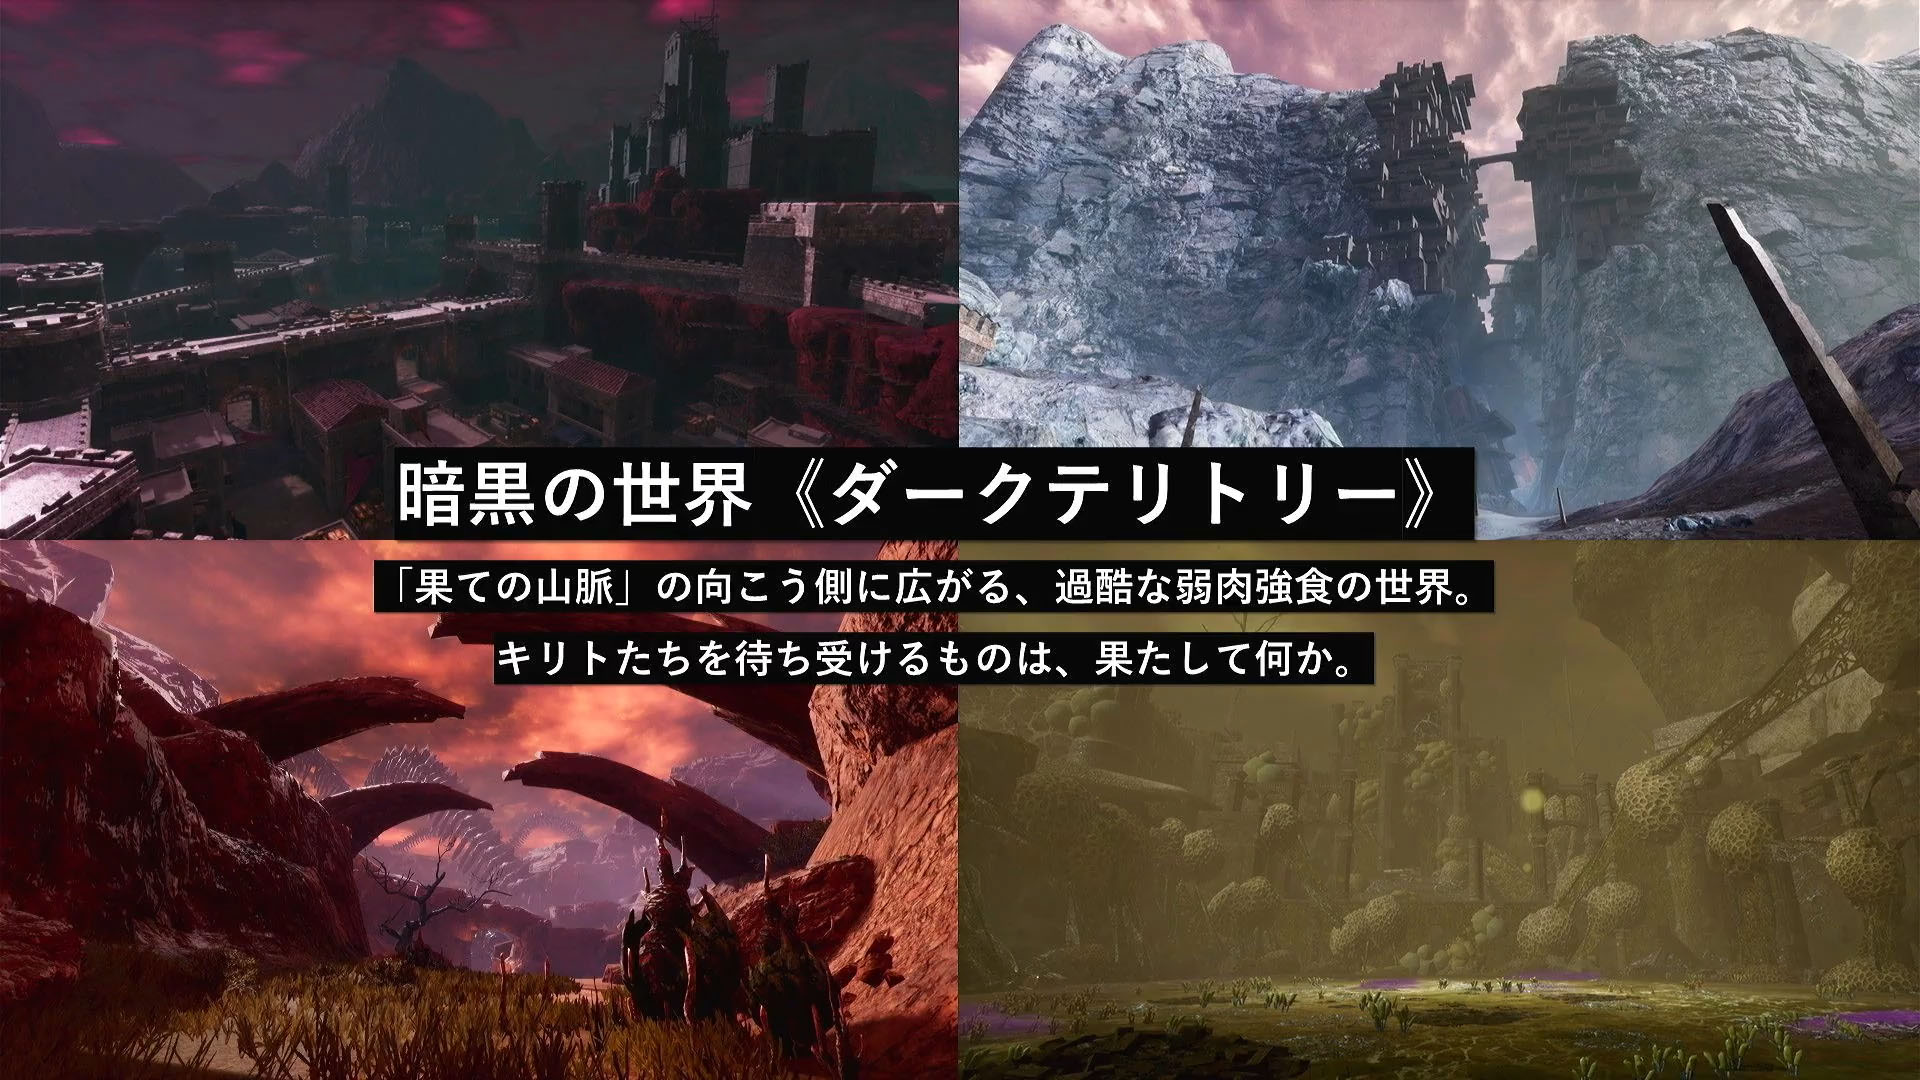  Sword Art Online: Lost Song [Online Game Code] : Video Games